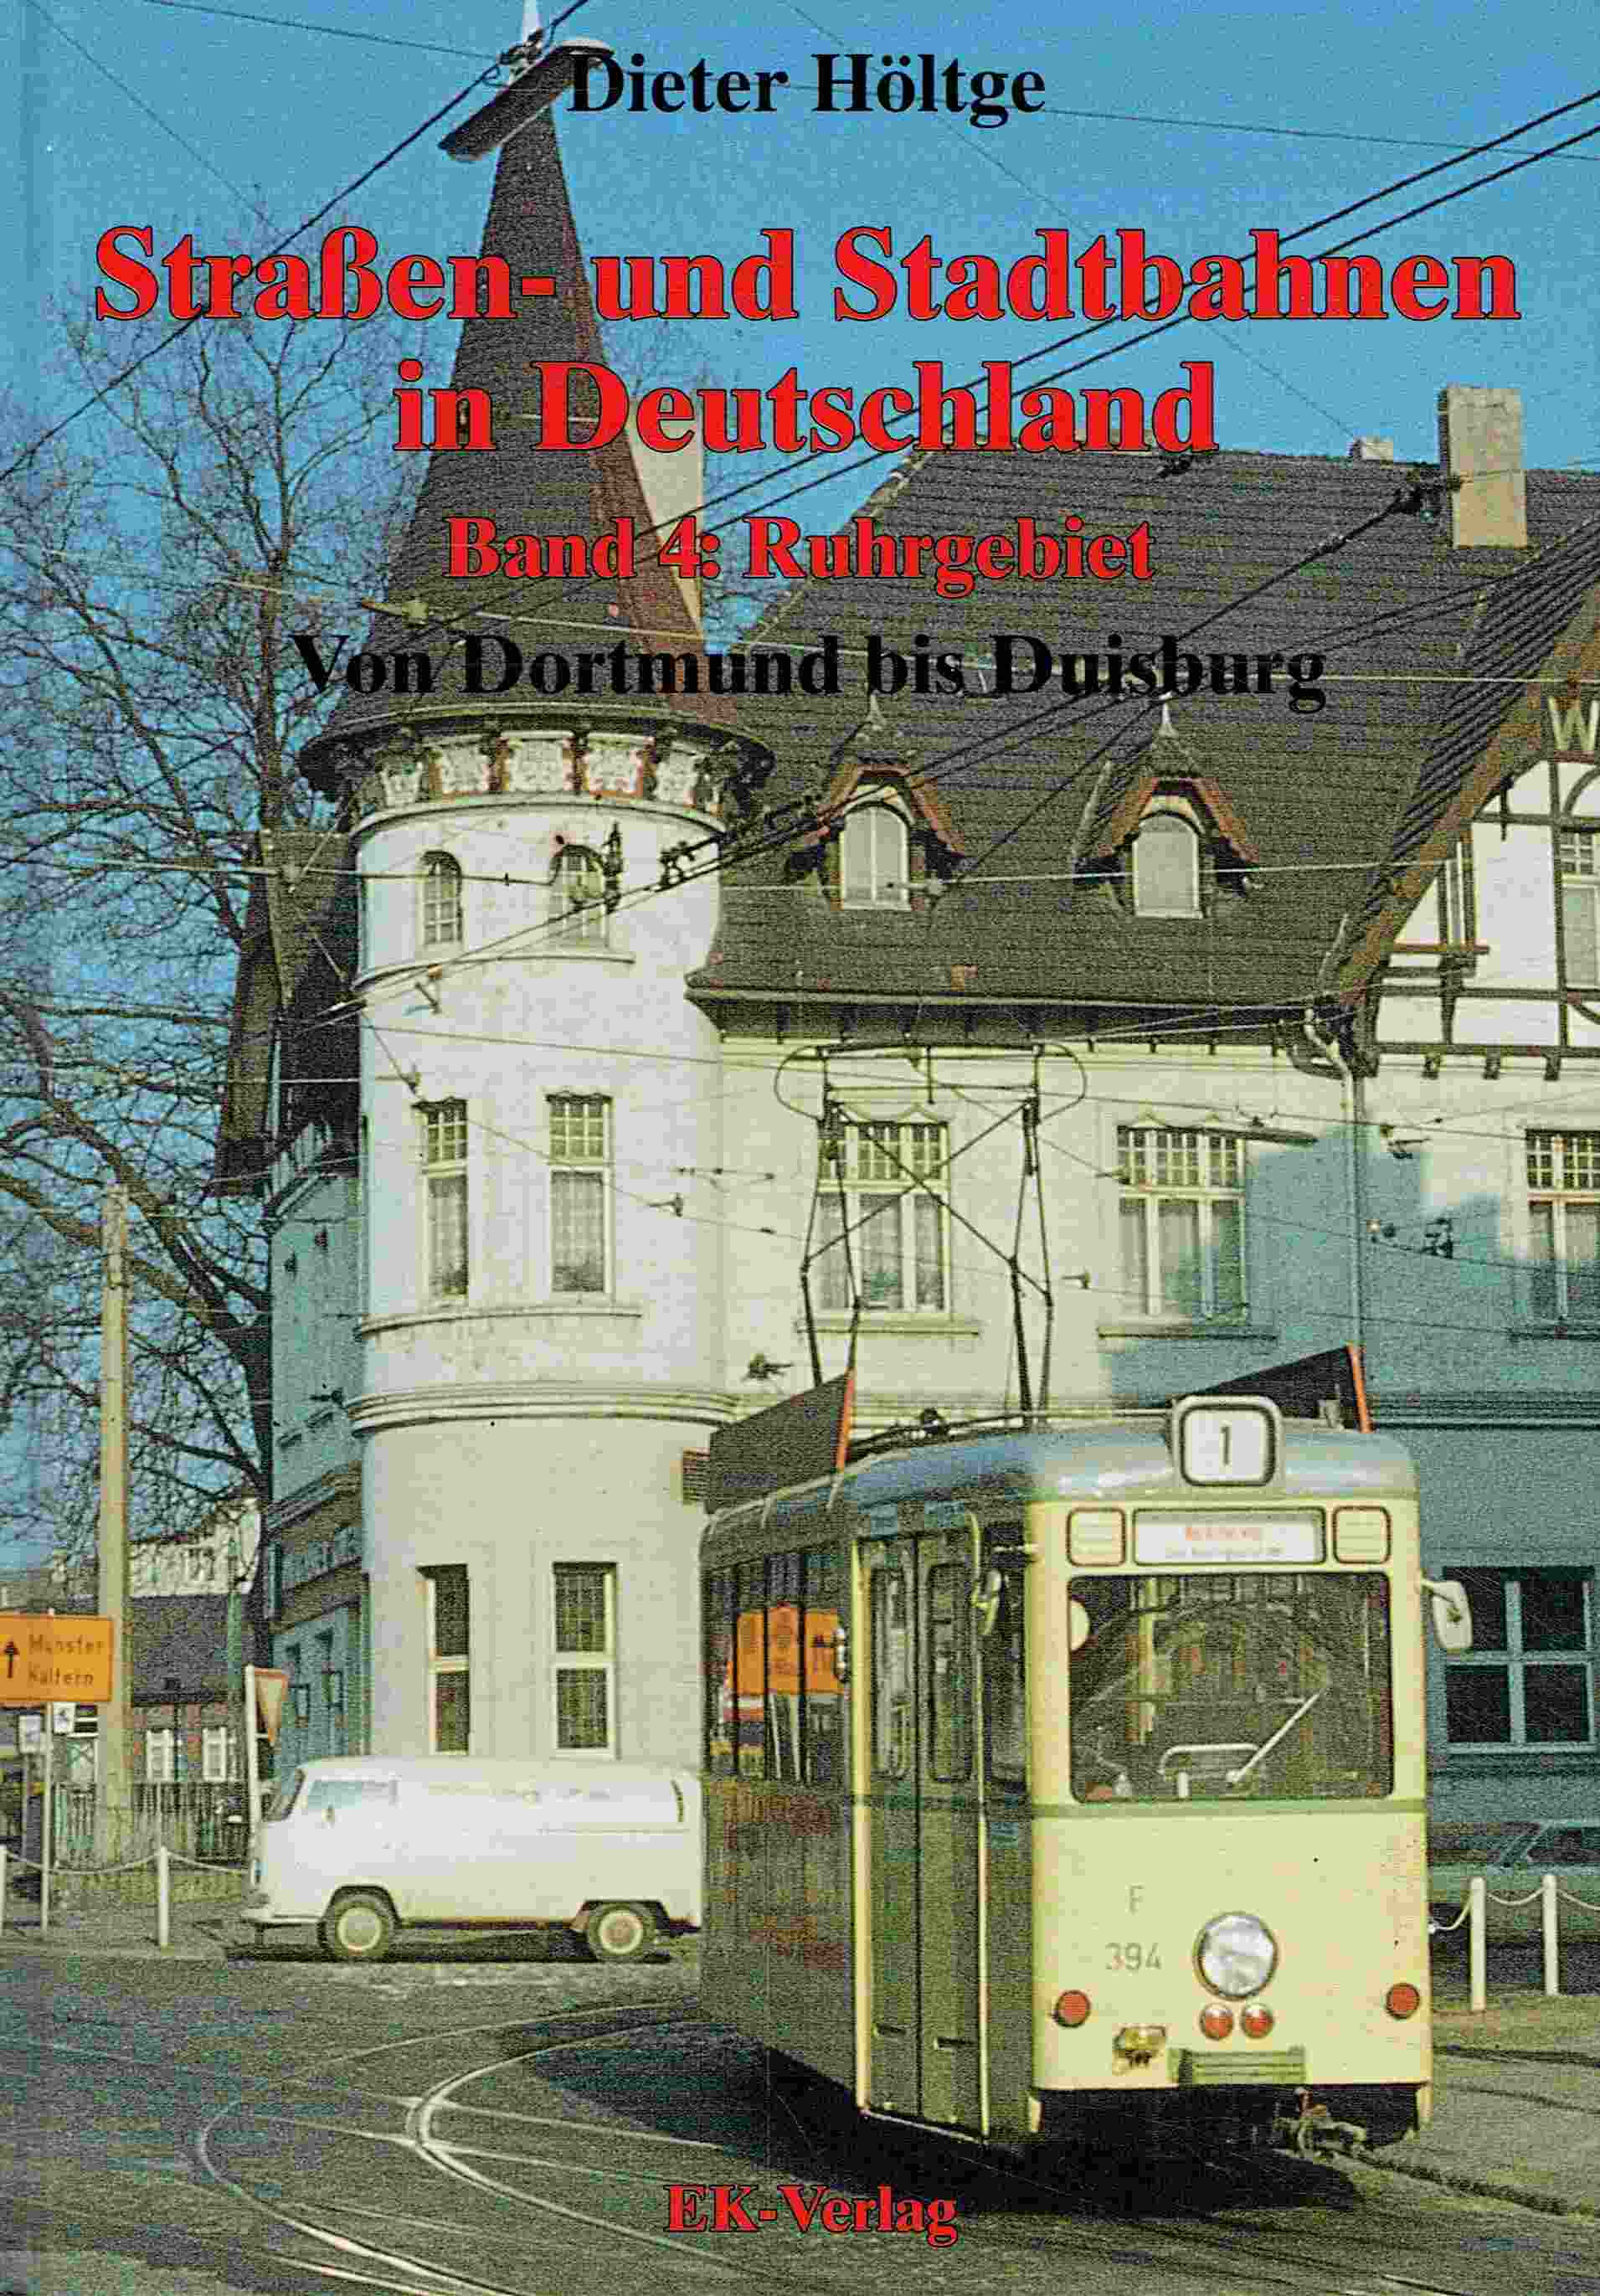 Straßenbahnen und Stadtbahnen in Deutschland. Band 4 : Ruhrgebiet: von Dortmund bis Duisburg. - Höltge, Dieter